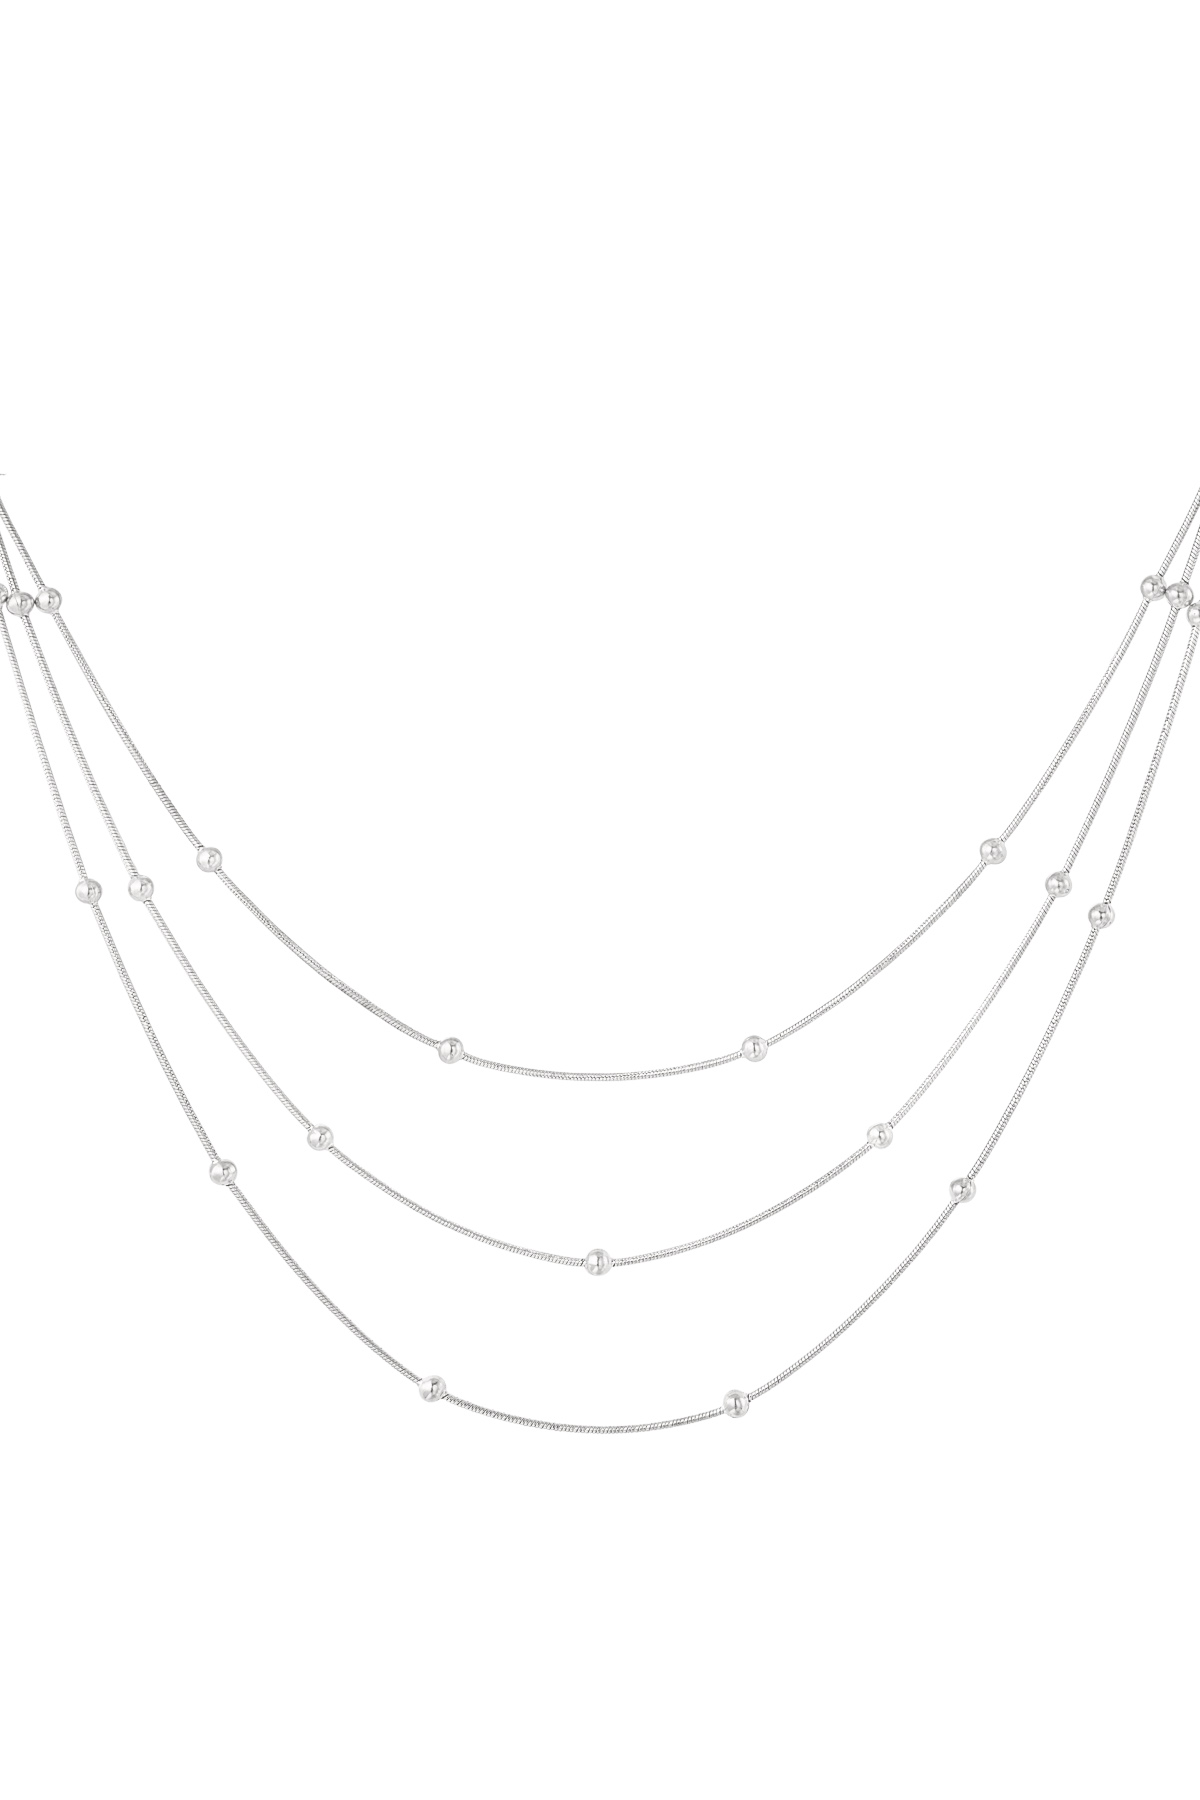 Halskette mit Twist – Silber 